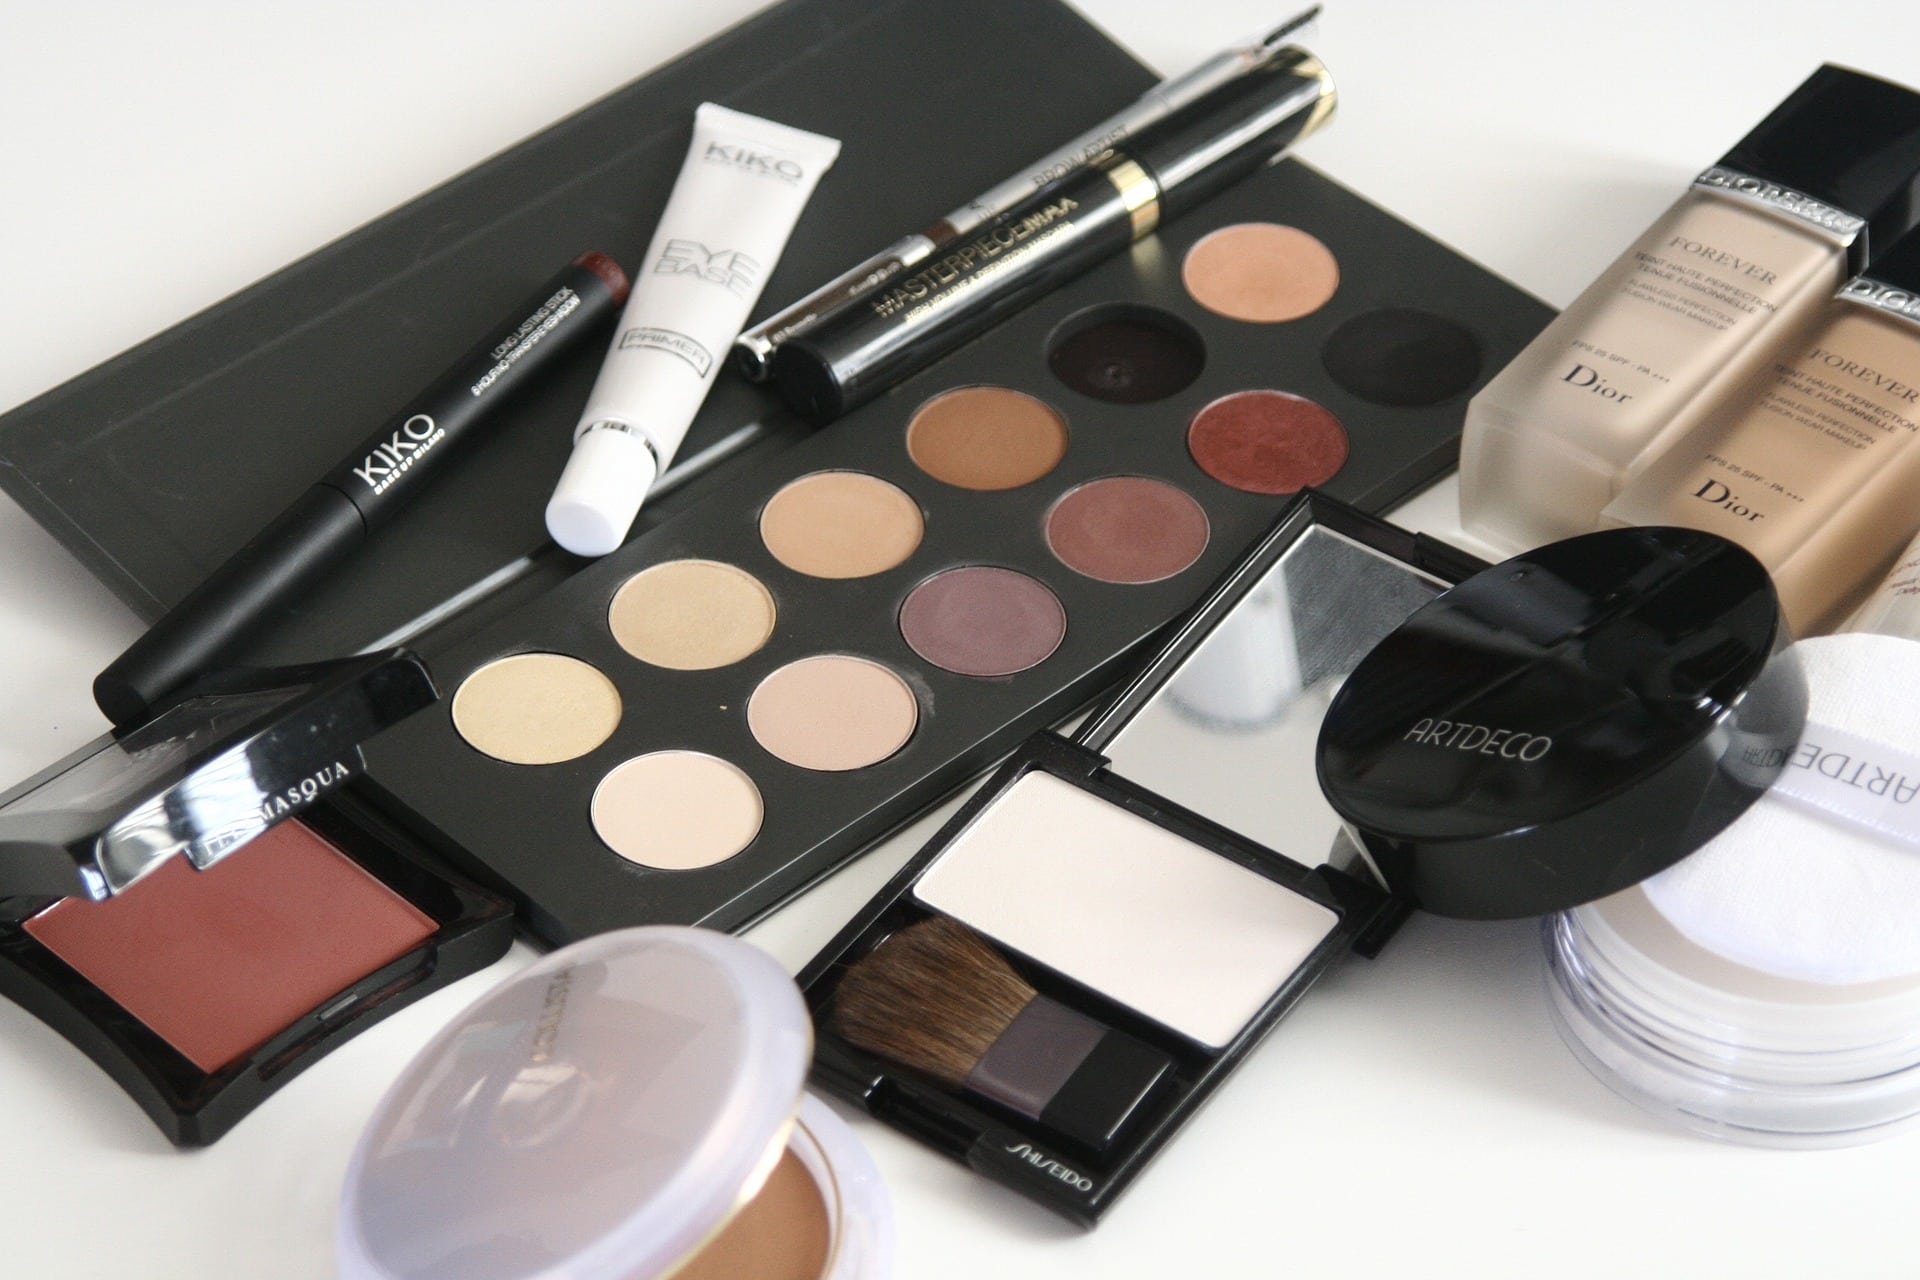 Acquistare makeup: ecco come fare acquisti più consapevoli. - - Il Caffe Web